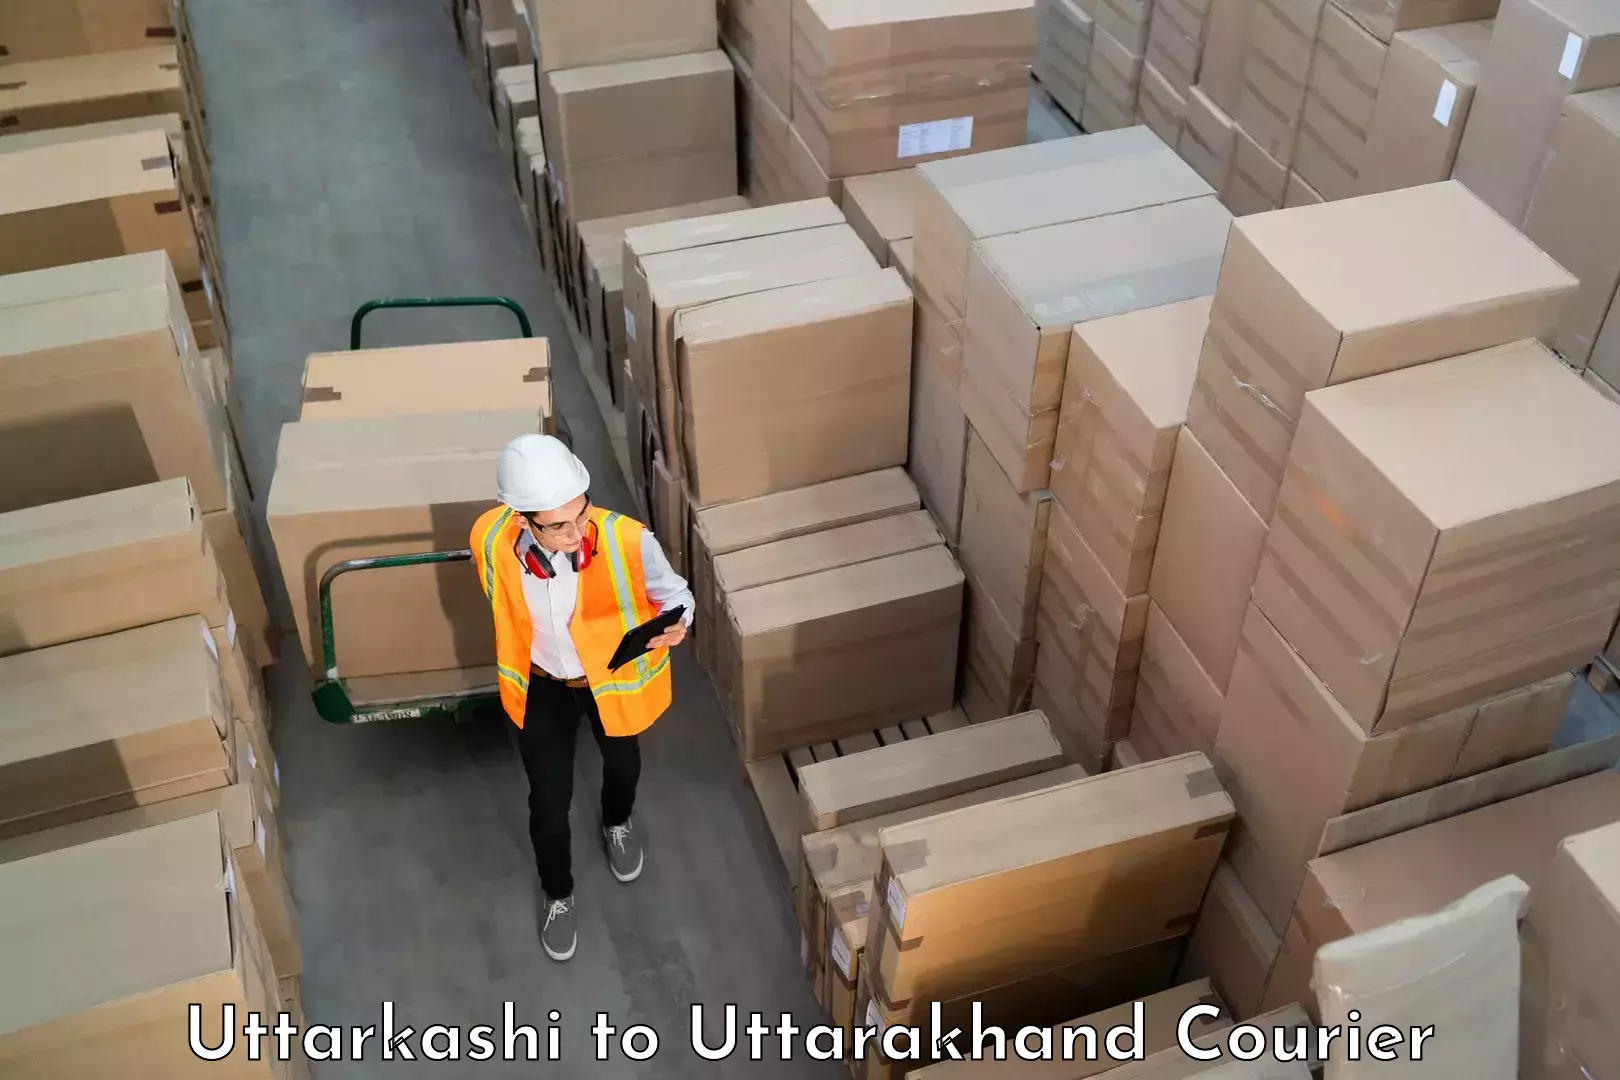 Luggage shipment strategy Uttarkashi to Uttarakhand